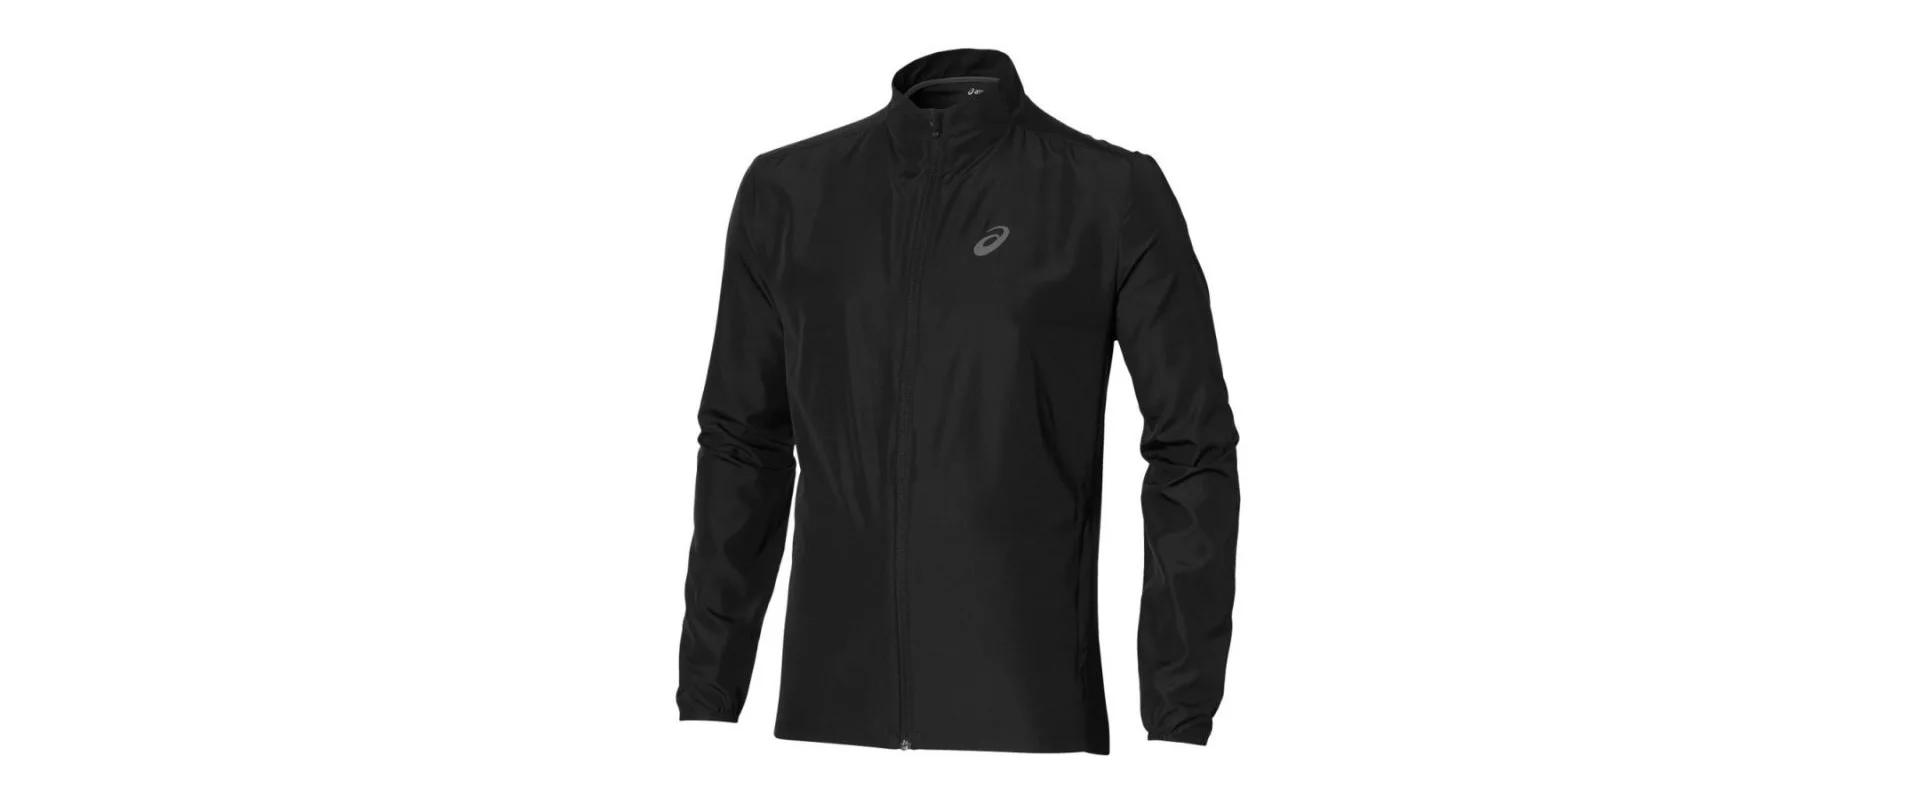 Asics Jacket / Мужская ветрозащитная куртка